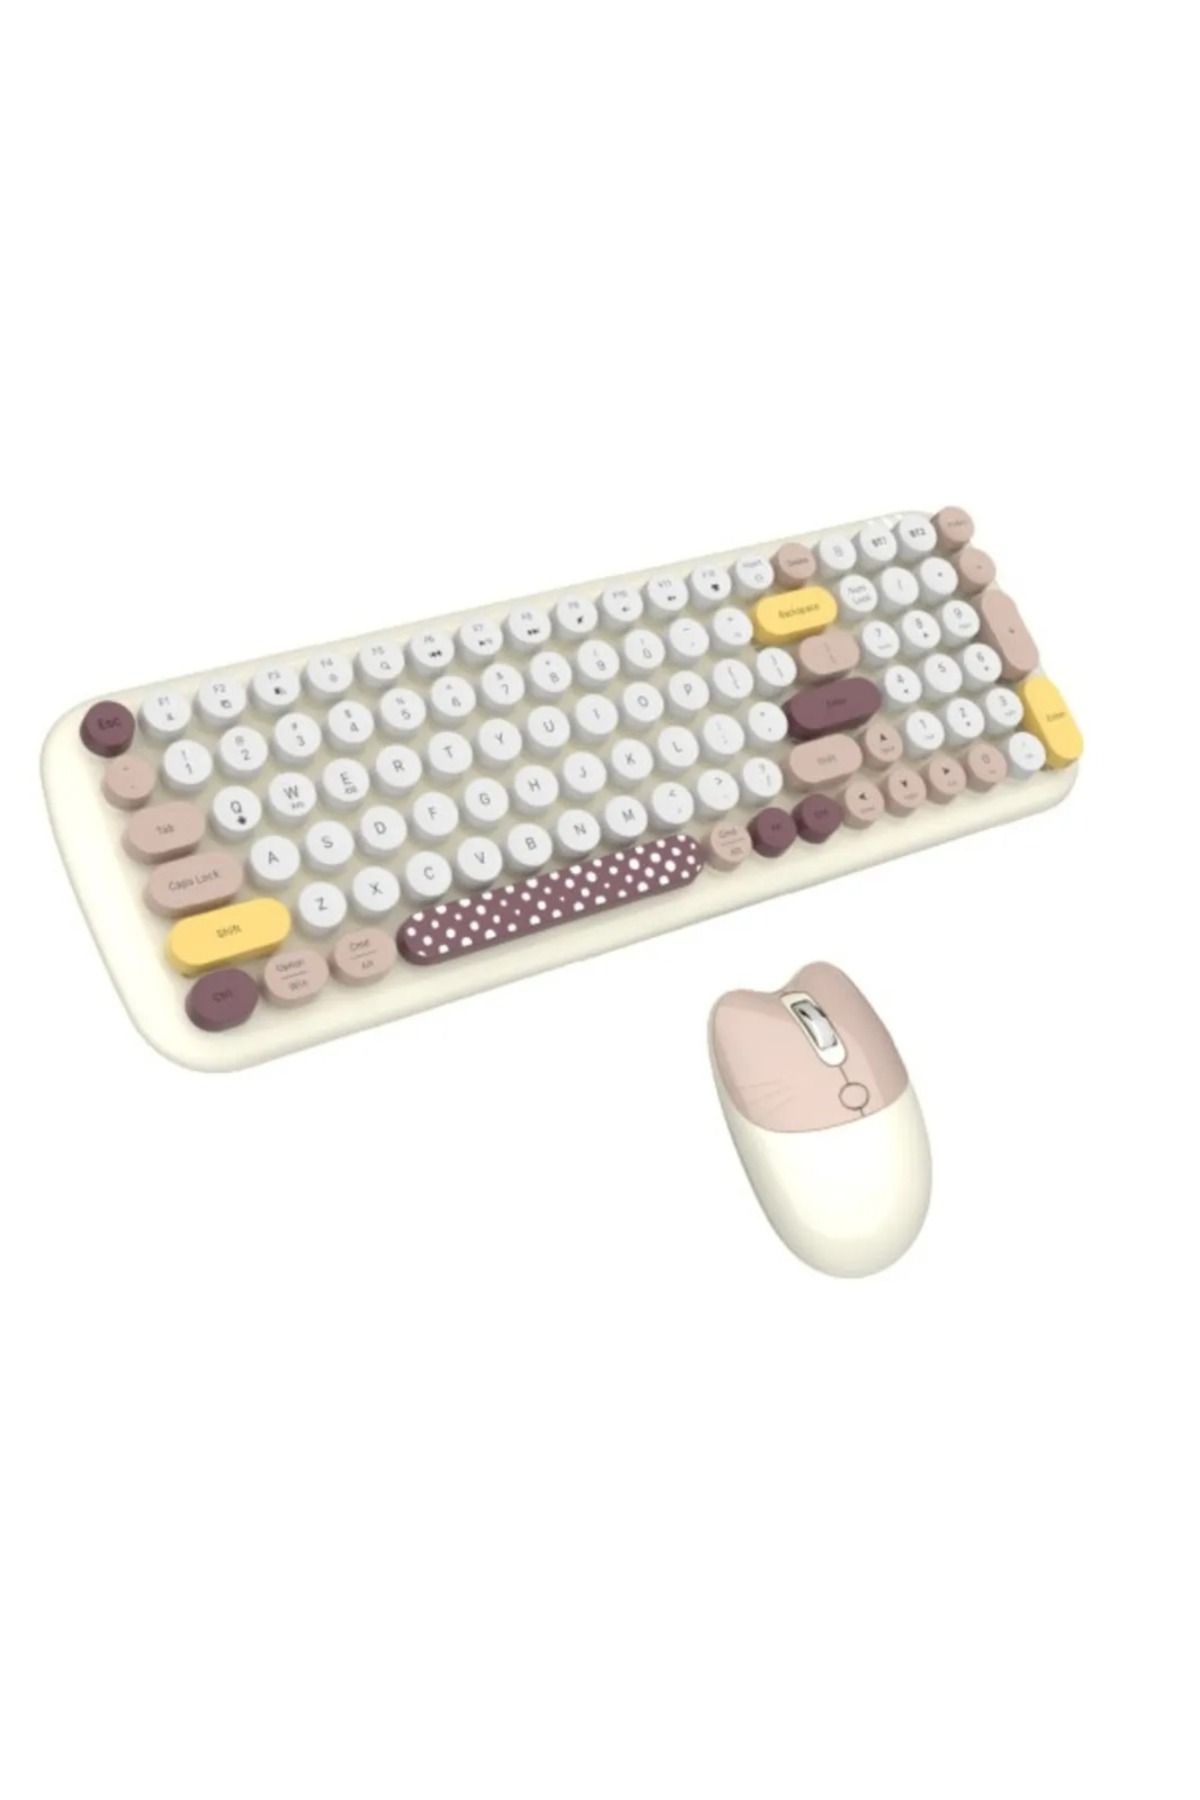 Alfa MEC Tüm Cihazlara Uyumlu Klavye Mouse Set Pilli Bluetooth Wireless 2 Bağlantı Seçenekli Renk Desenli Set